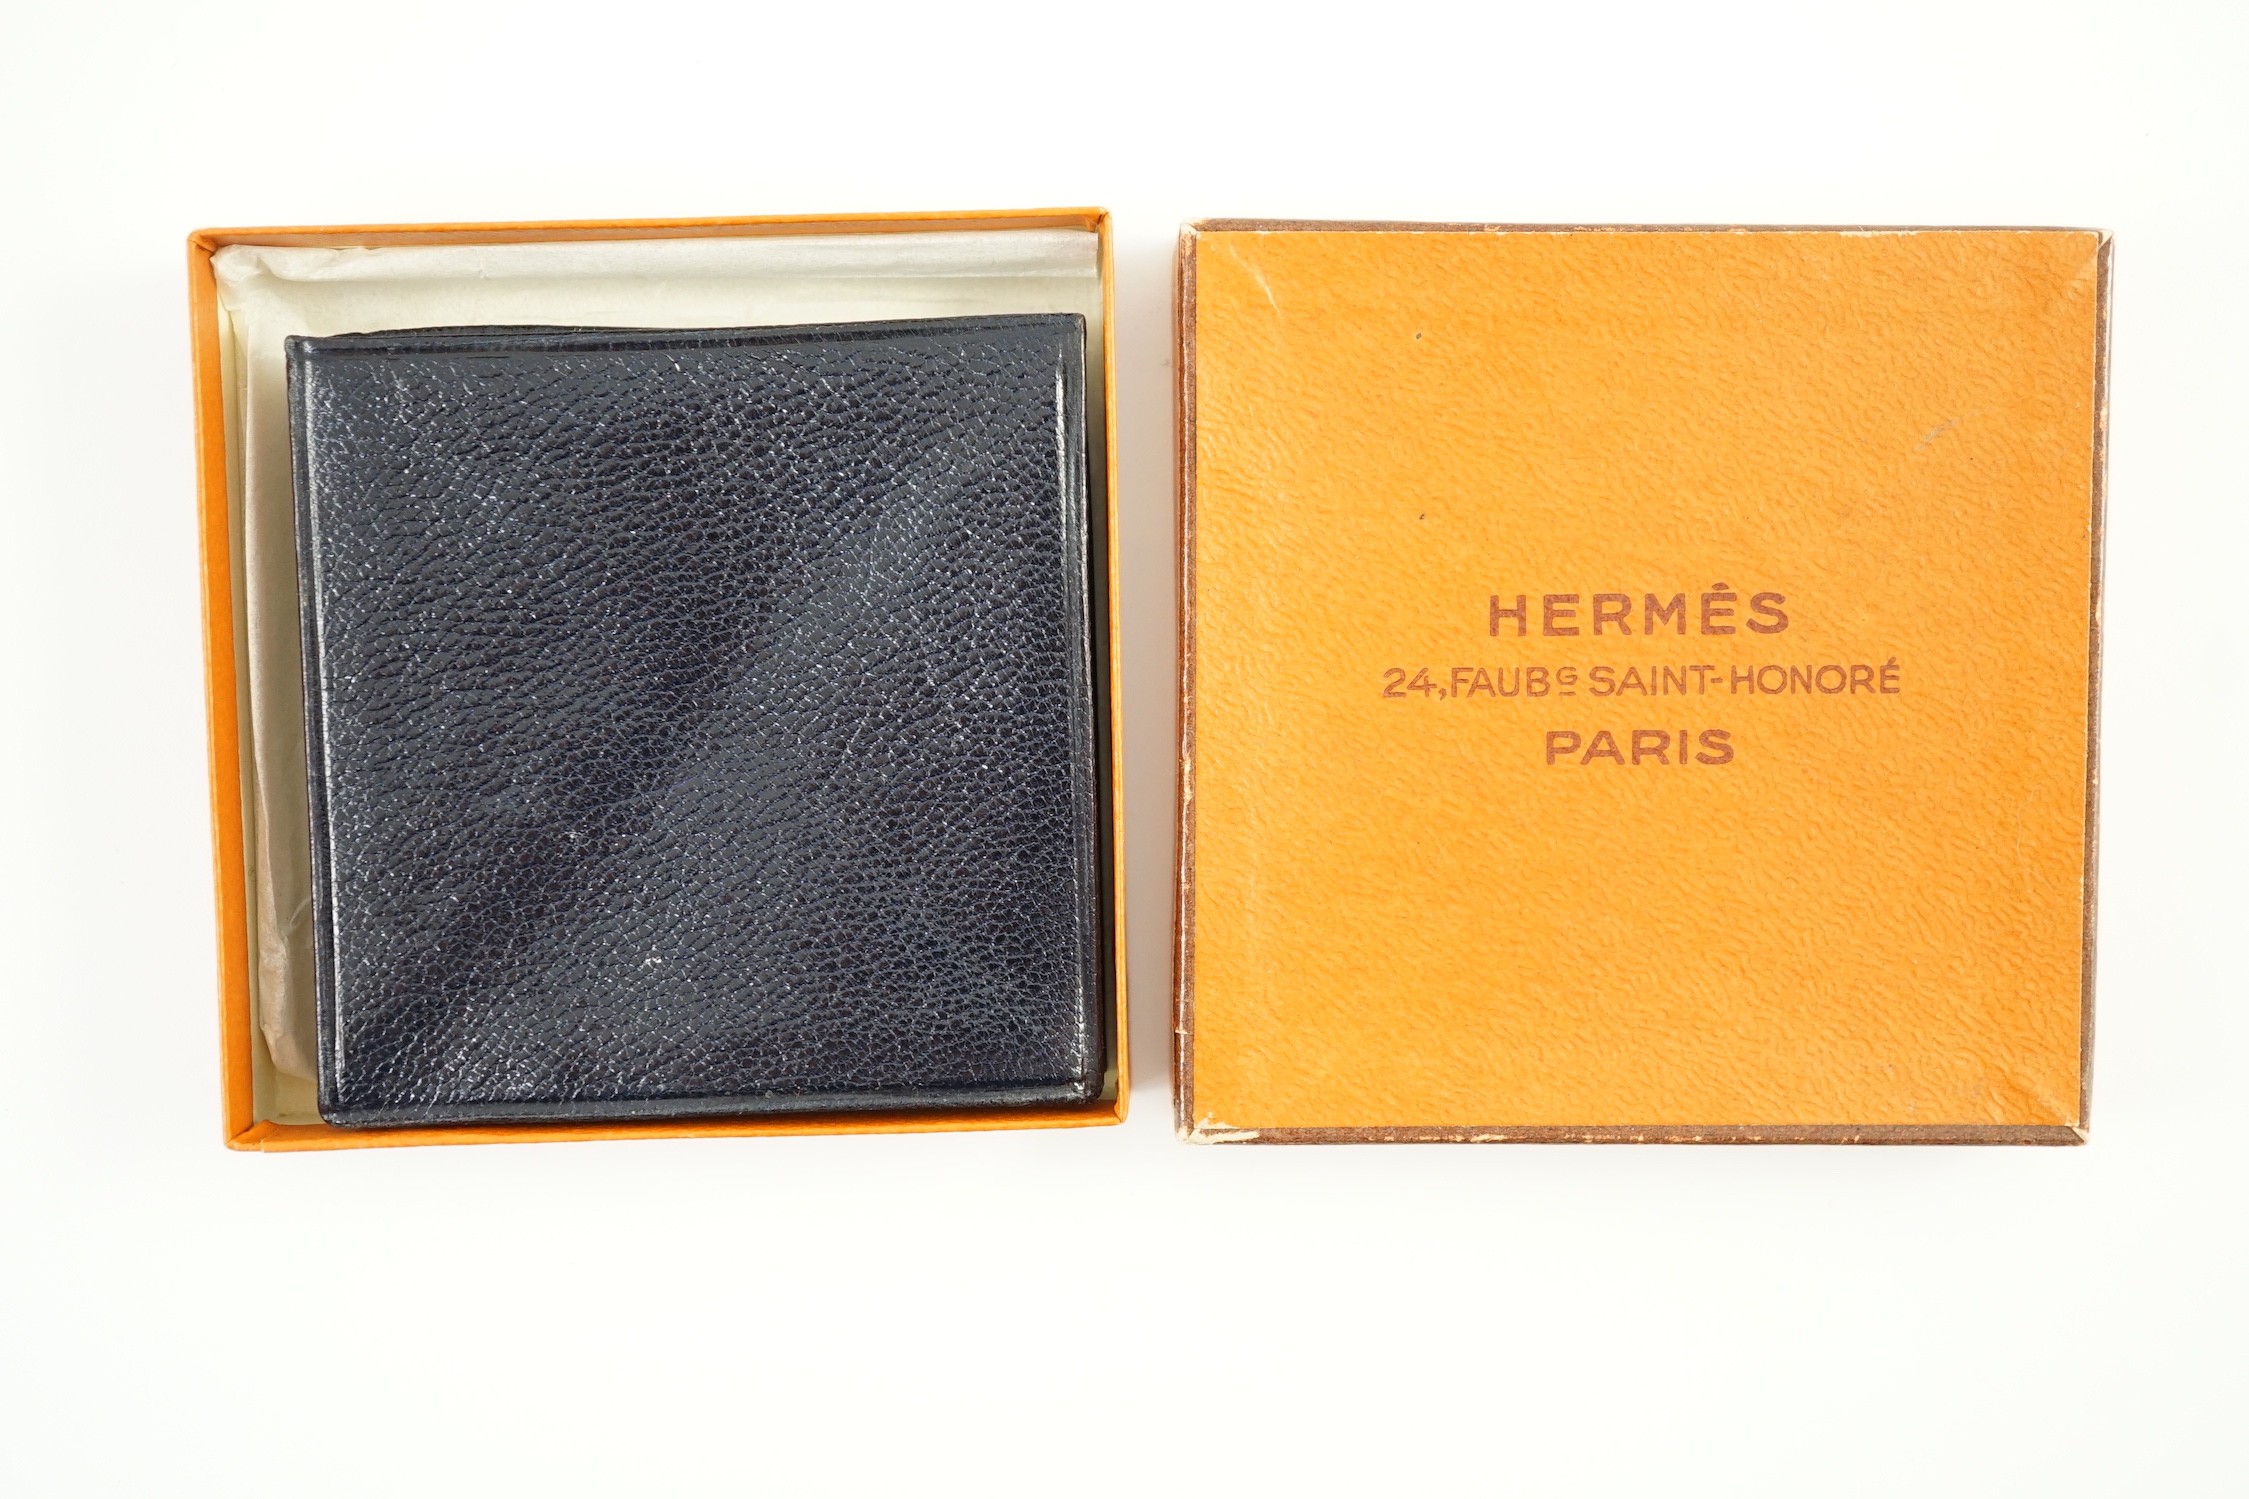 A boxed vintage Hermes blue leather purse, 7 cm.